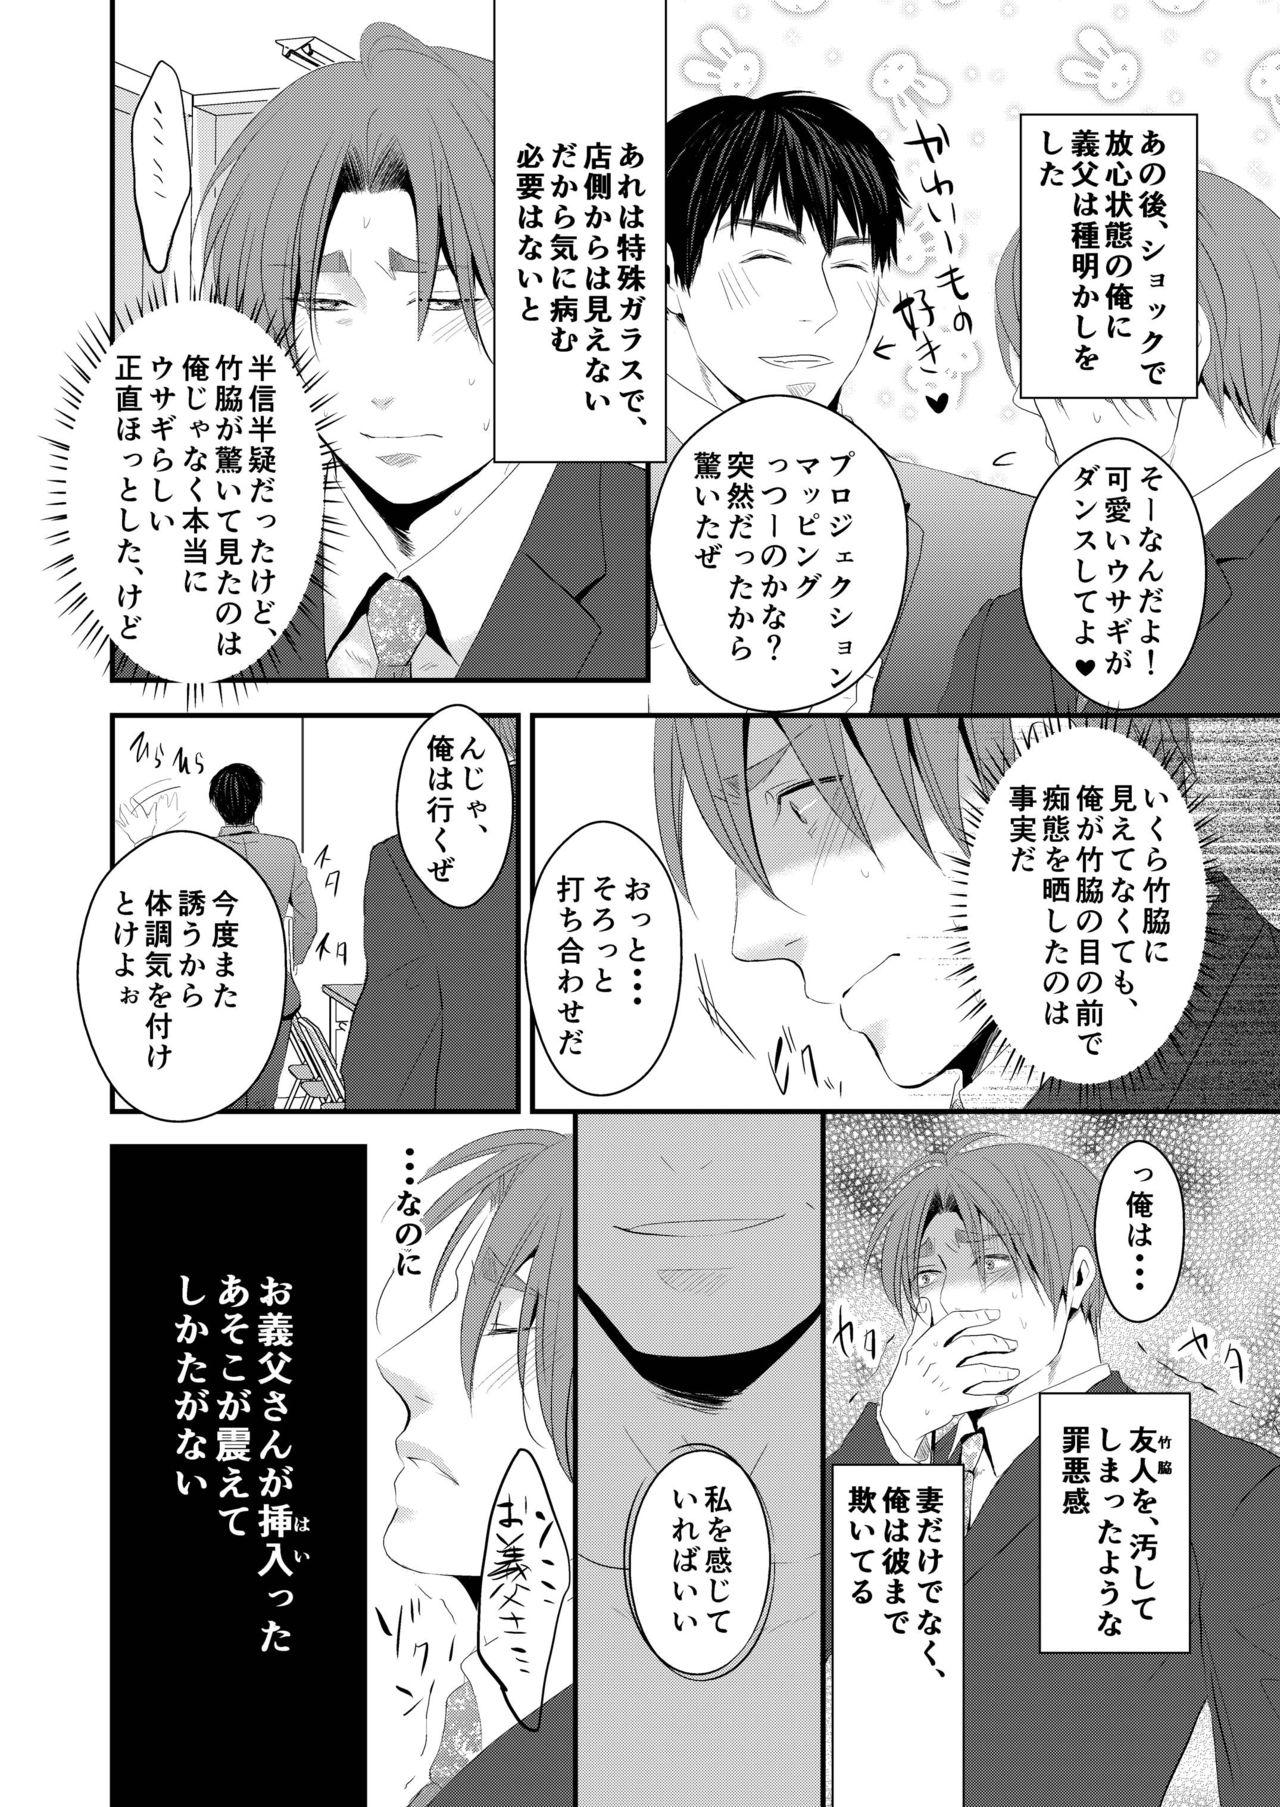 Hotfuck Kono ai wa Yamai ni Nite iru 3 Dildo - Page 27